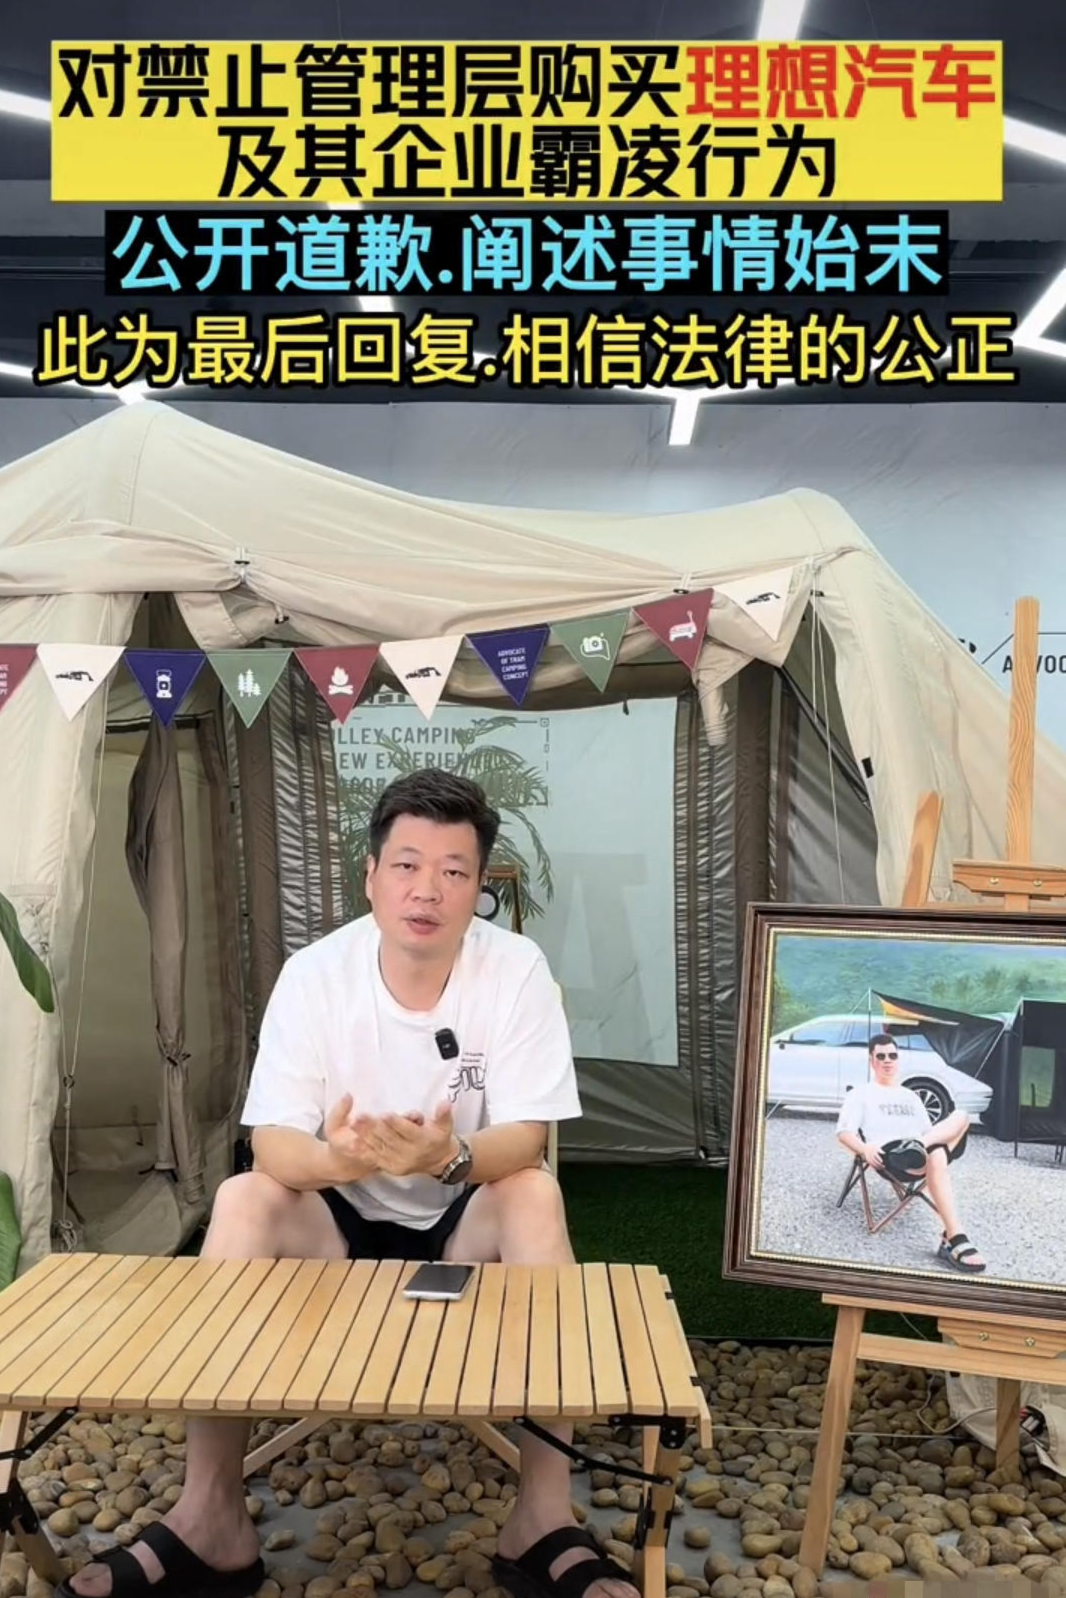 ▲广州米客公司发视频道歉 视频截图